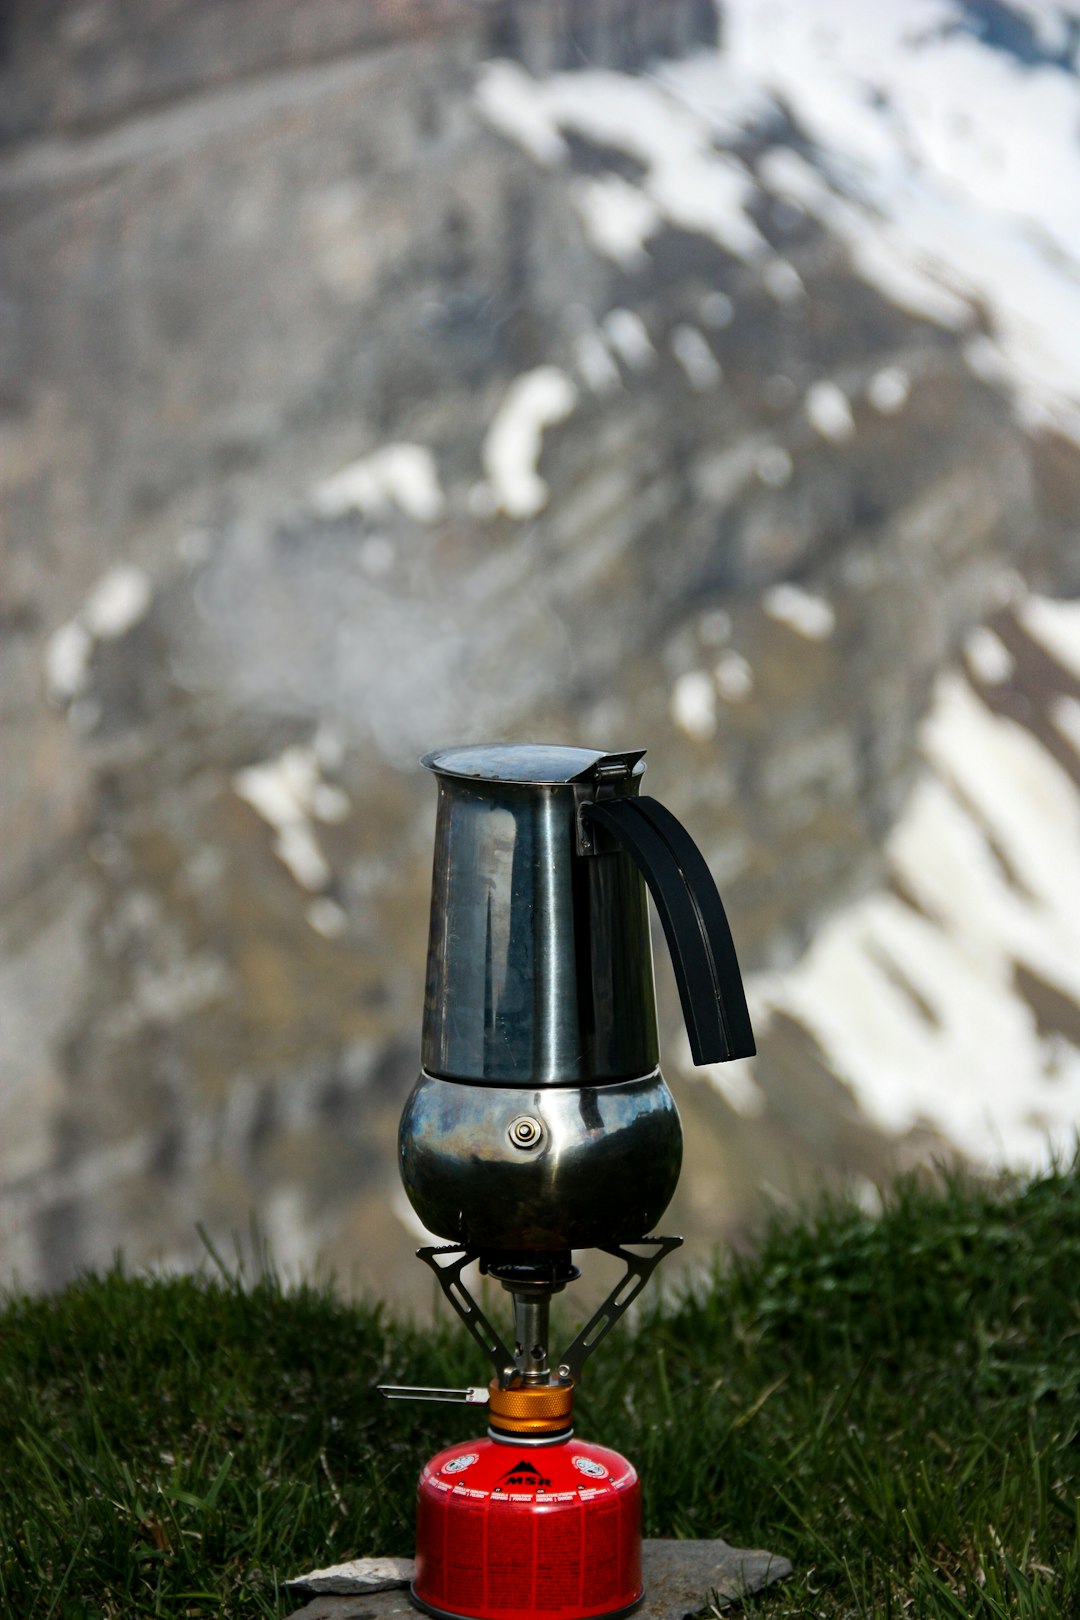 stainless steel kettle on red portable kerosene camping stove